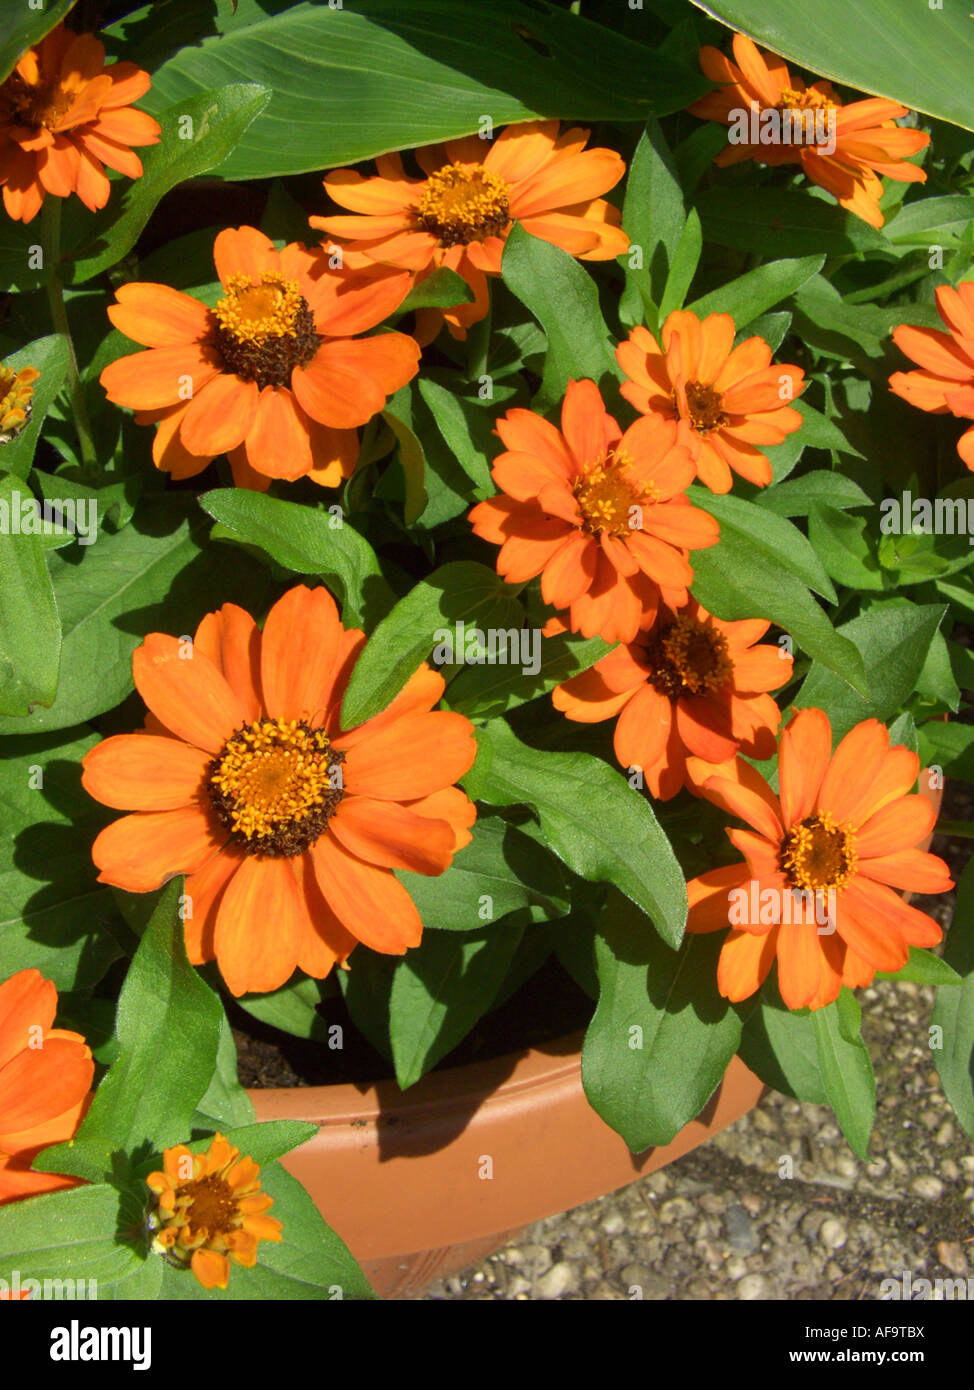 Orange star zinnia (Zinnia haageana 'Profusion Orange', Zinnia haageana Profusion Orange), blooming Stock Photo